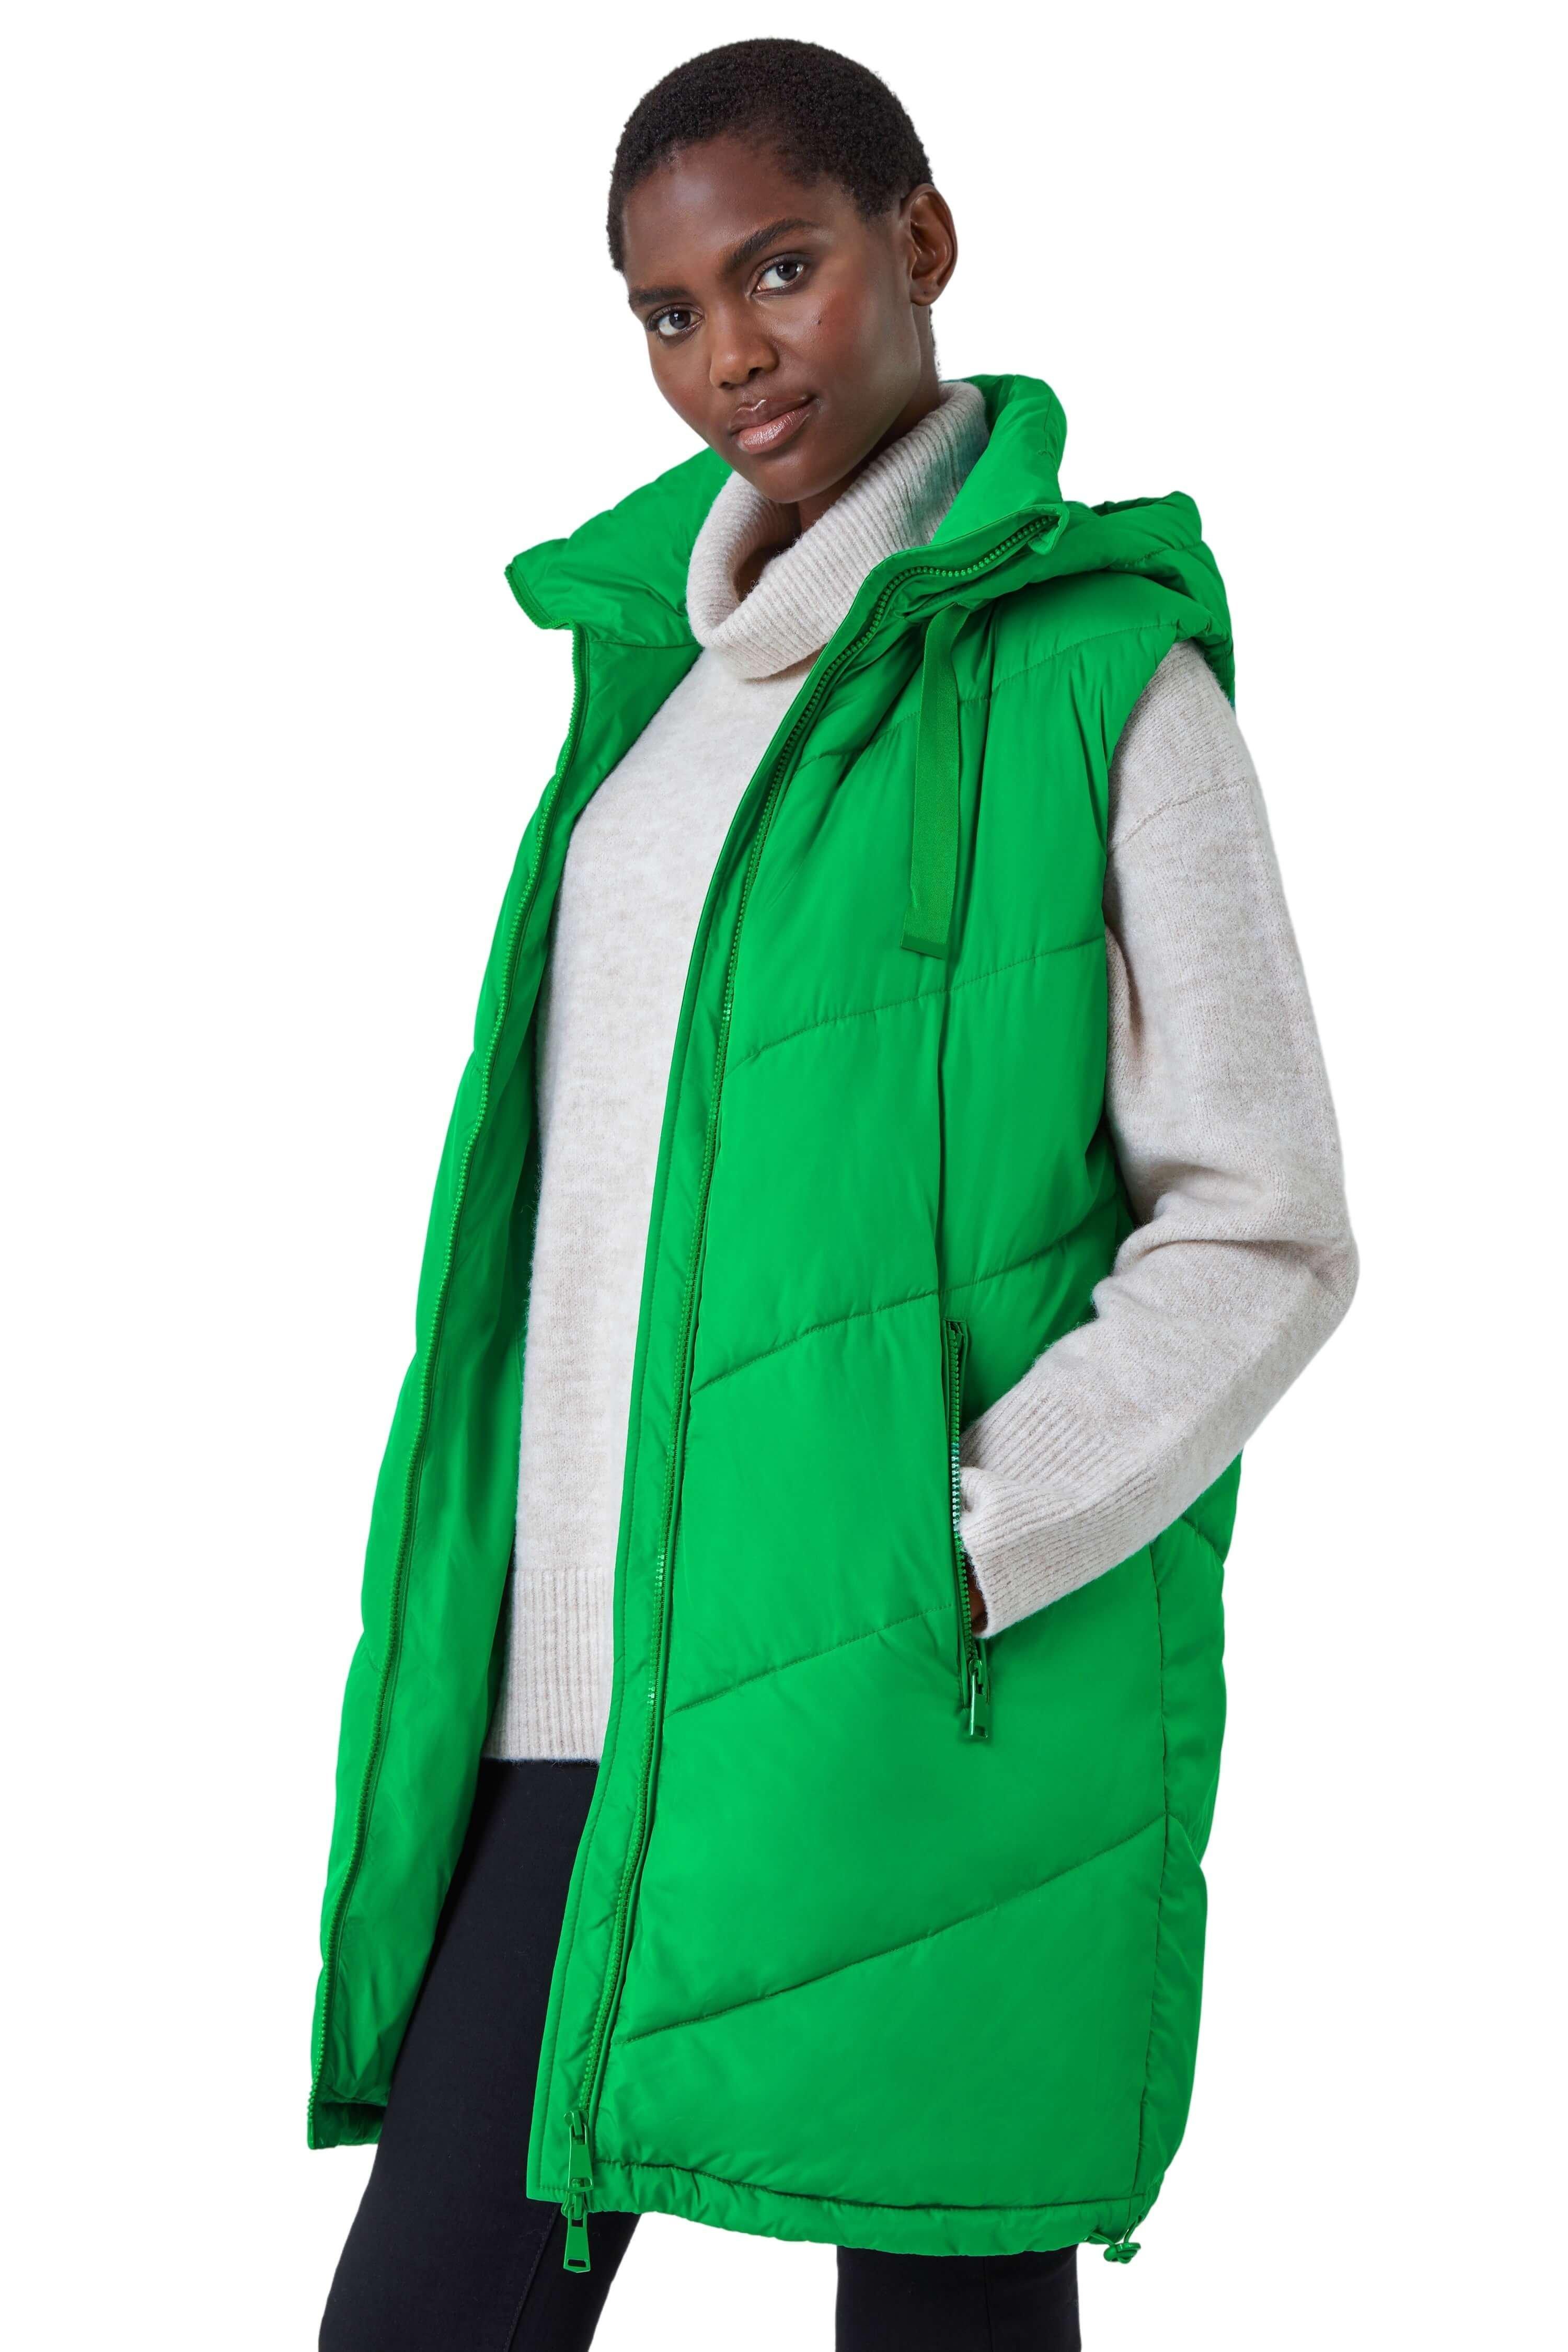 Стеганый жилет с капюшоном Roman, зеленый светоотражающий жилет с молнией спереди защитный жилет с отражающими полосками рабочая одежда для строительства защитный светоотражающ